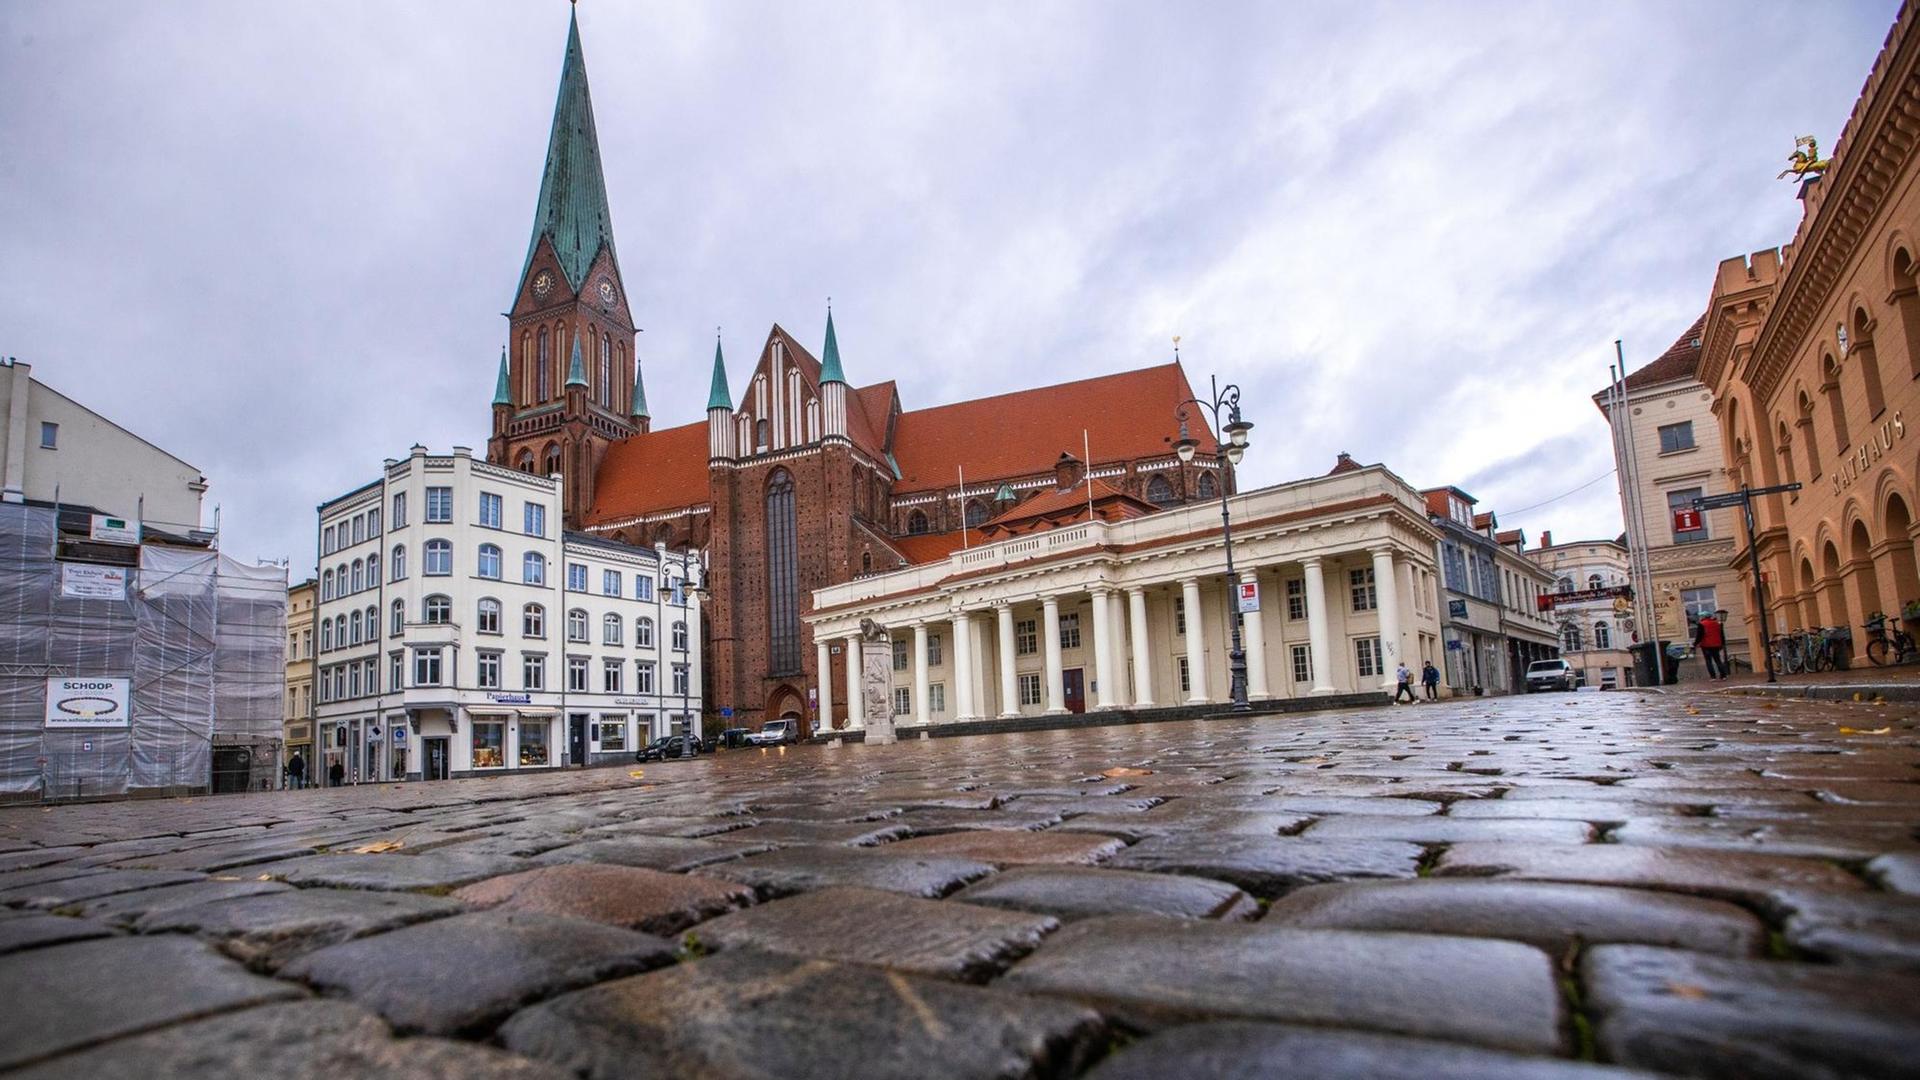 Der Marktplatz mit Kopfsteinpflaster und der Dom von Schwerin.